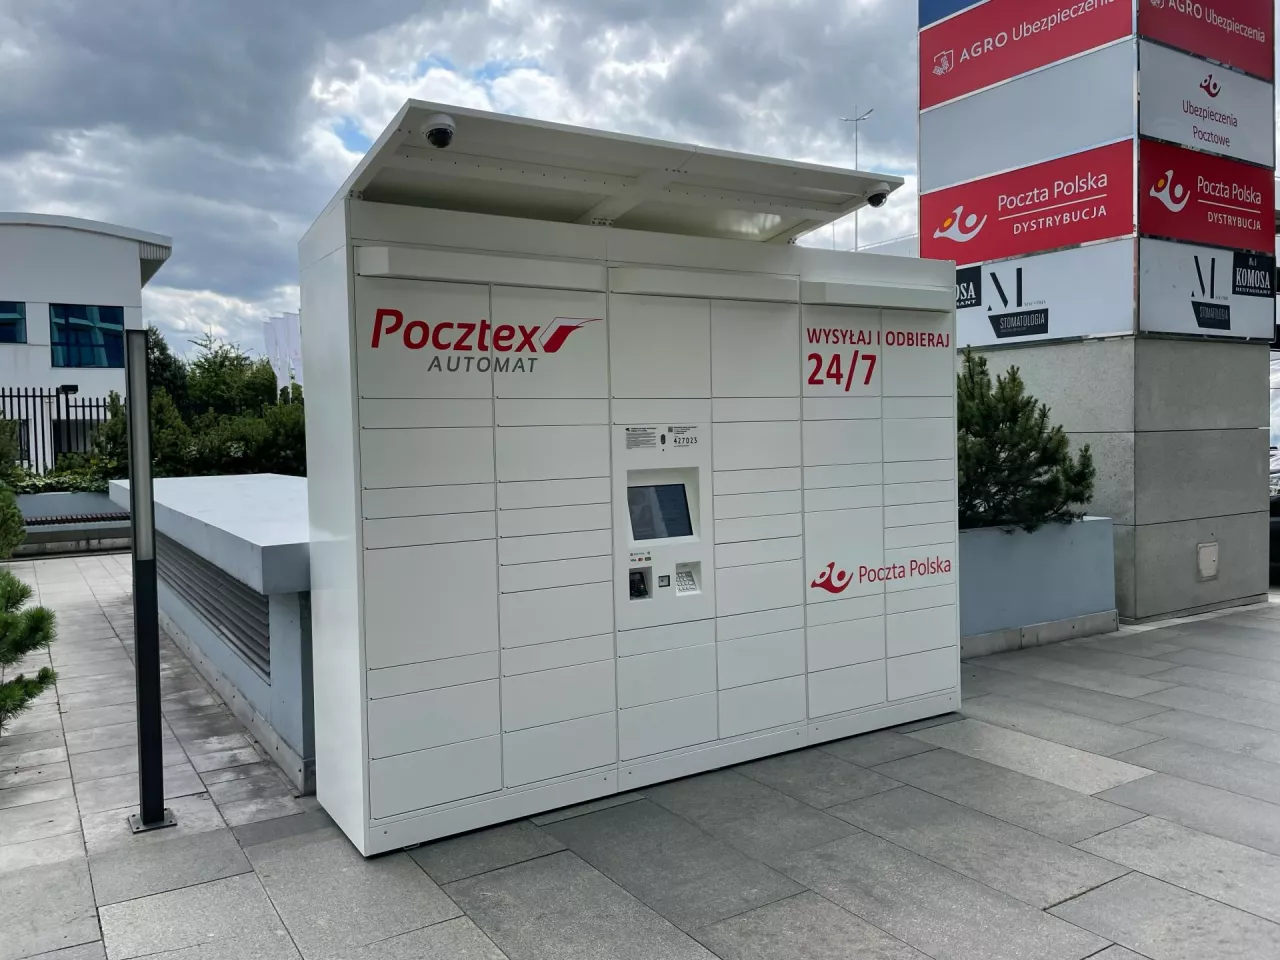 Tak będą wyglądać nowe automaty paczkowe Poczty Polskiej (fot. wiadomoscihandlowe.pl)